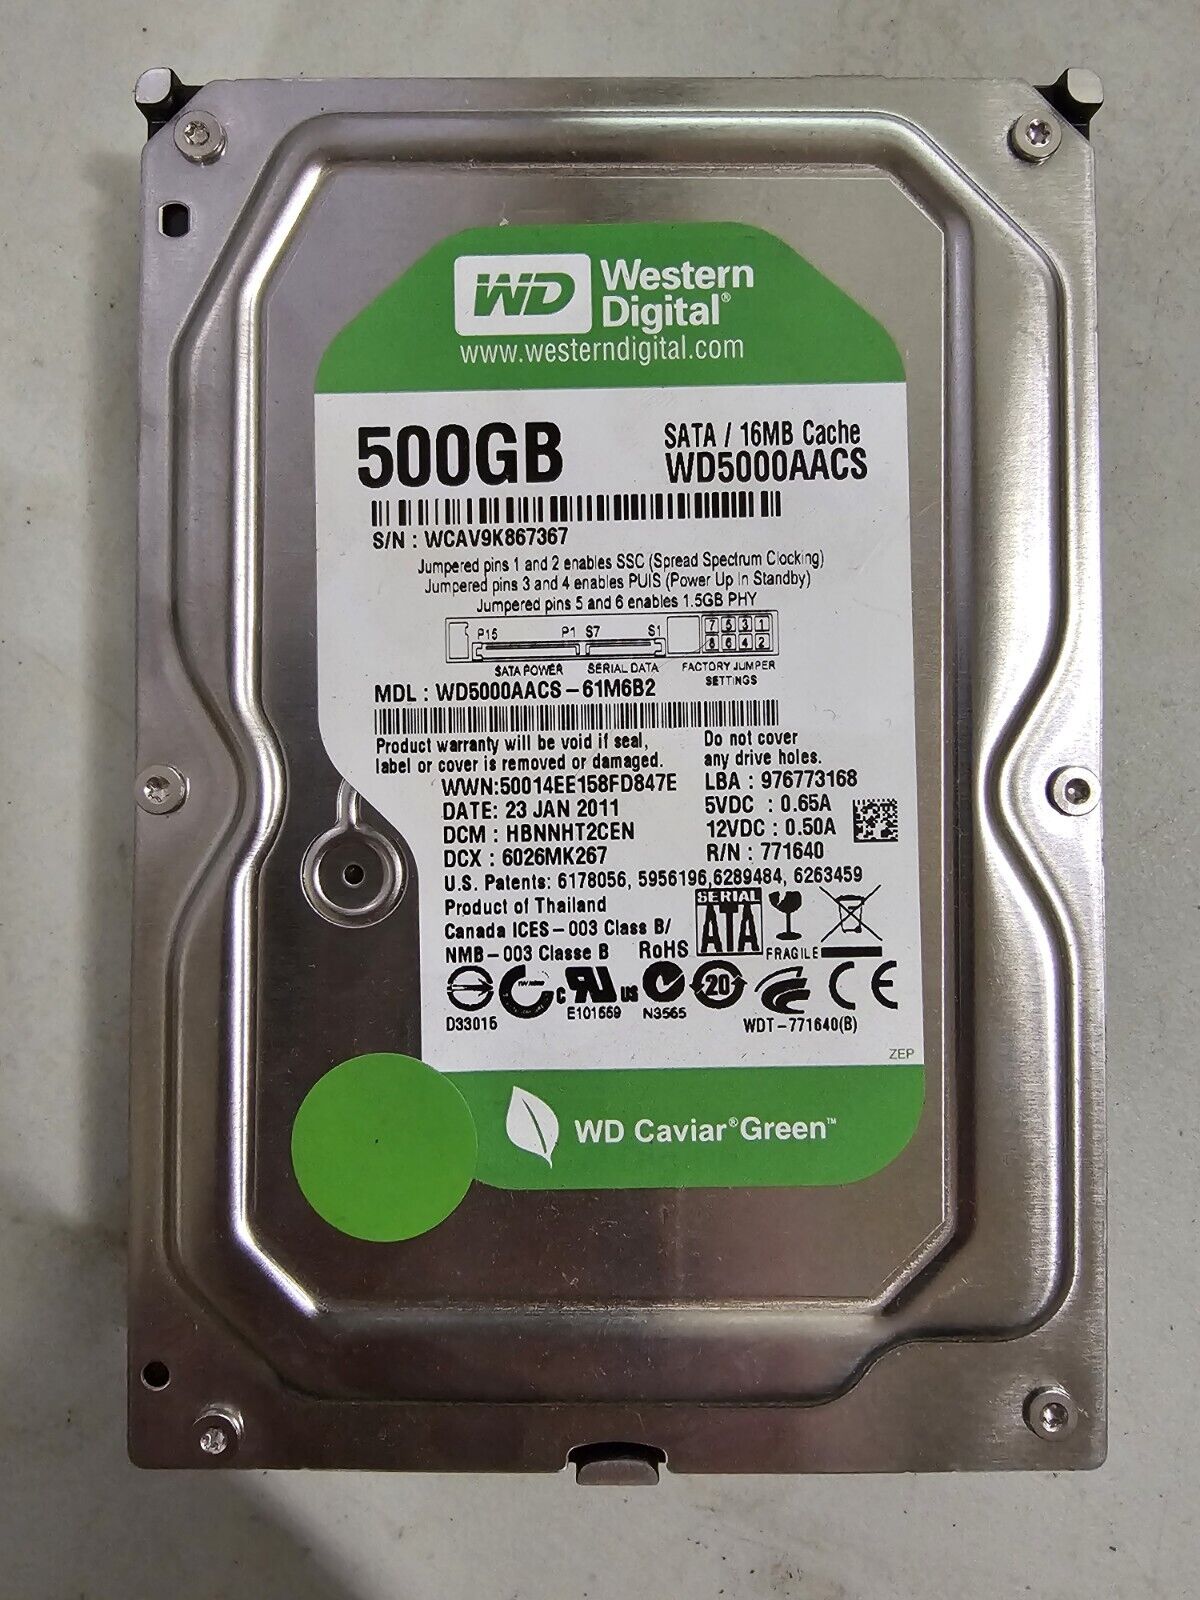 Western Digital Caviar Green 500GB Internal Desktop Hard Drive 16MB (WD5000AACS)